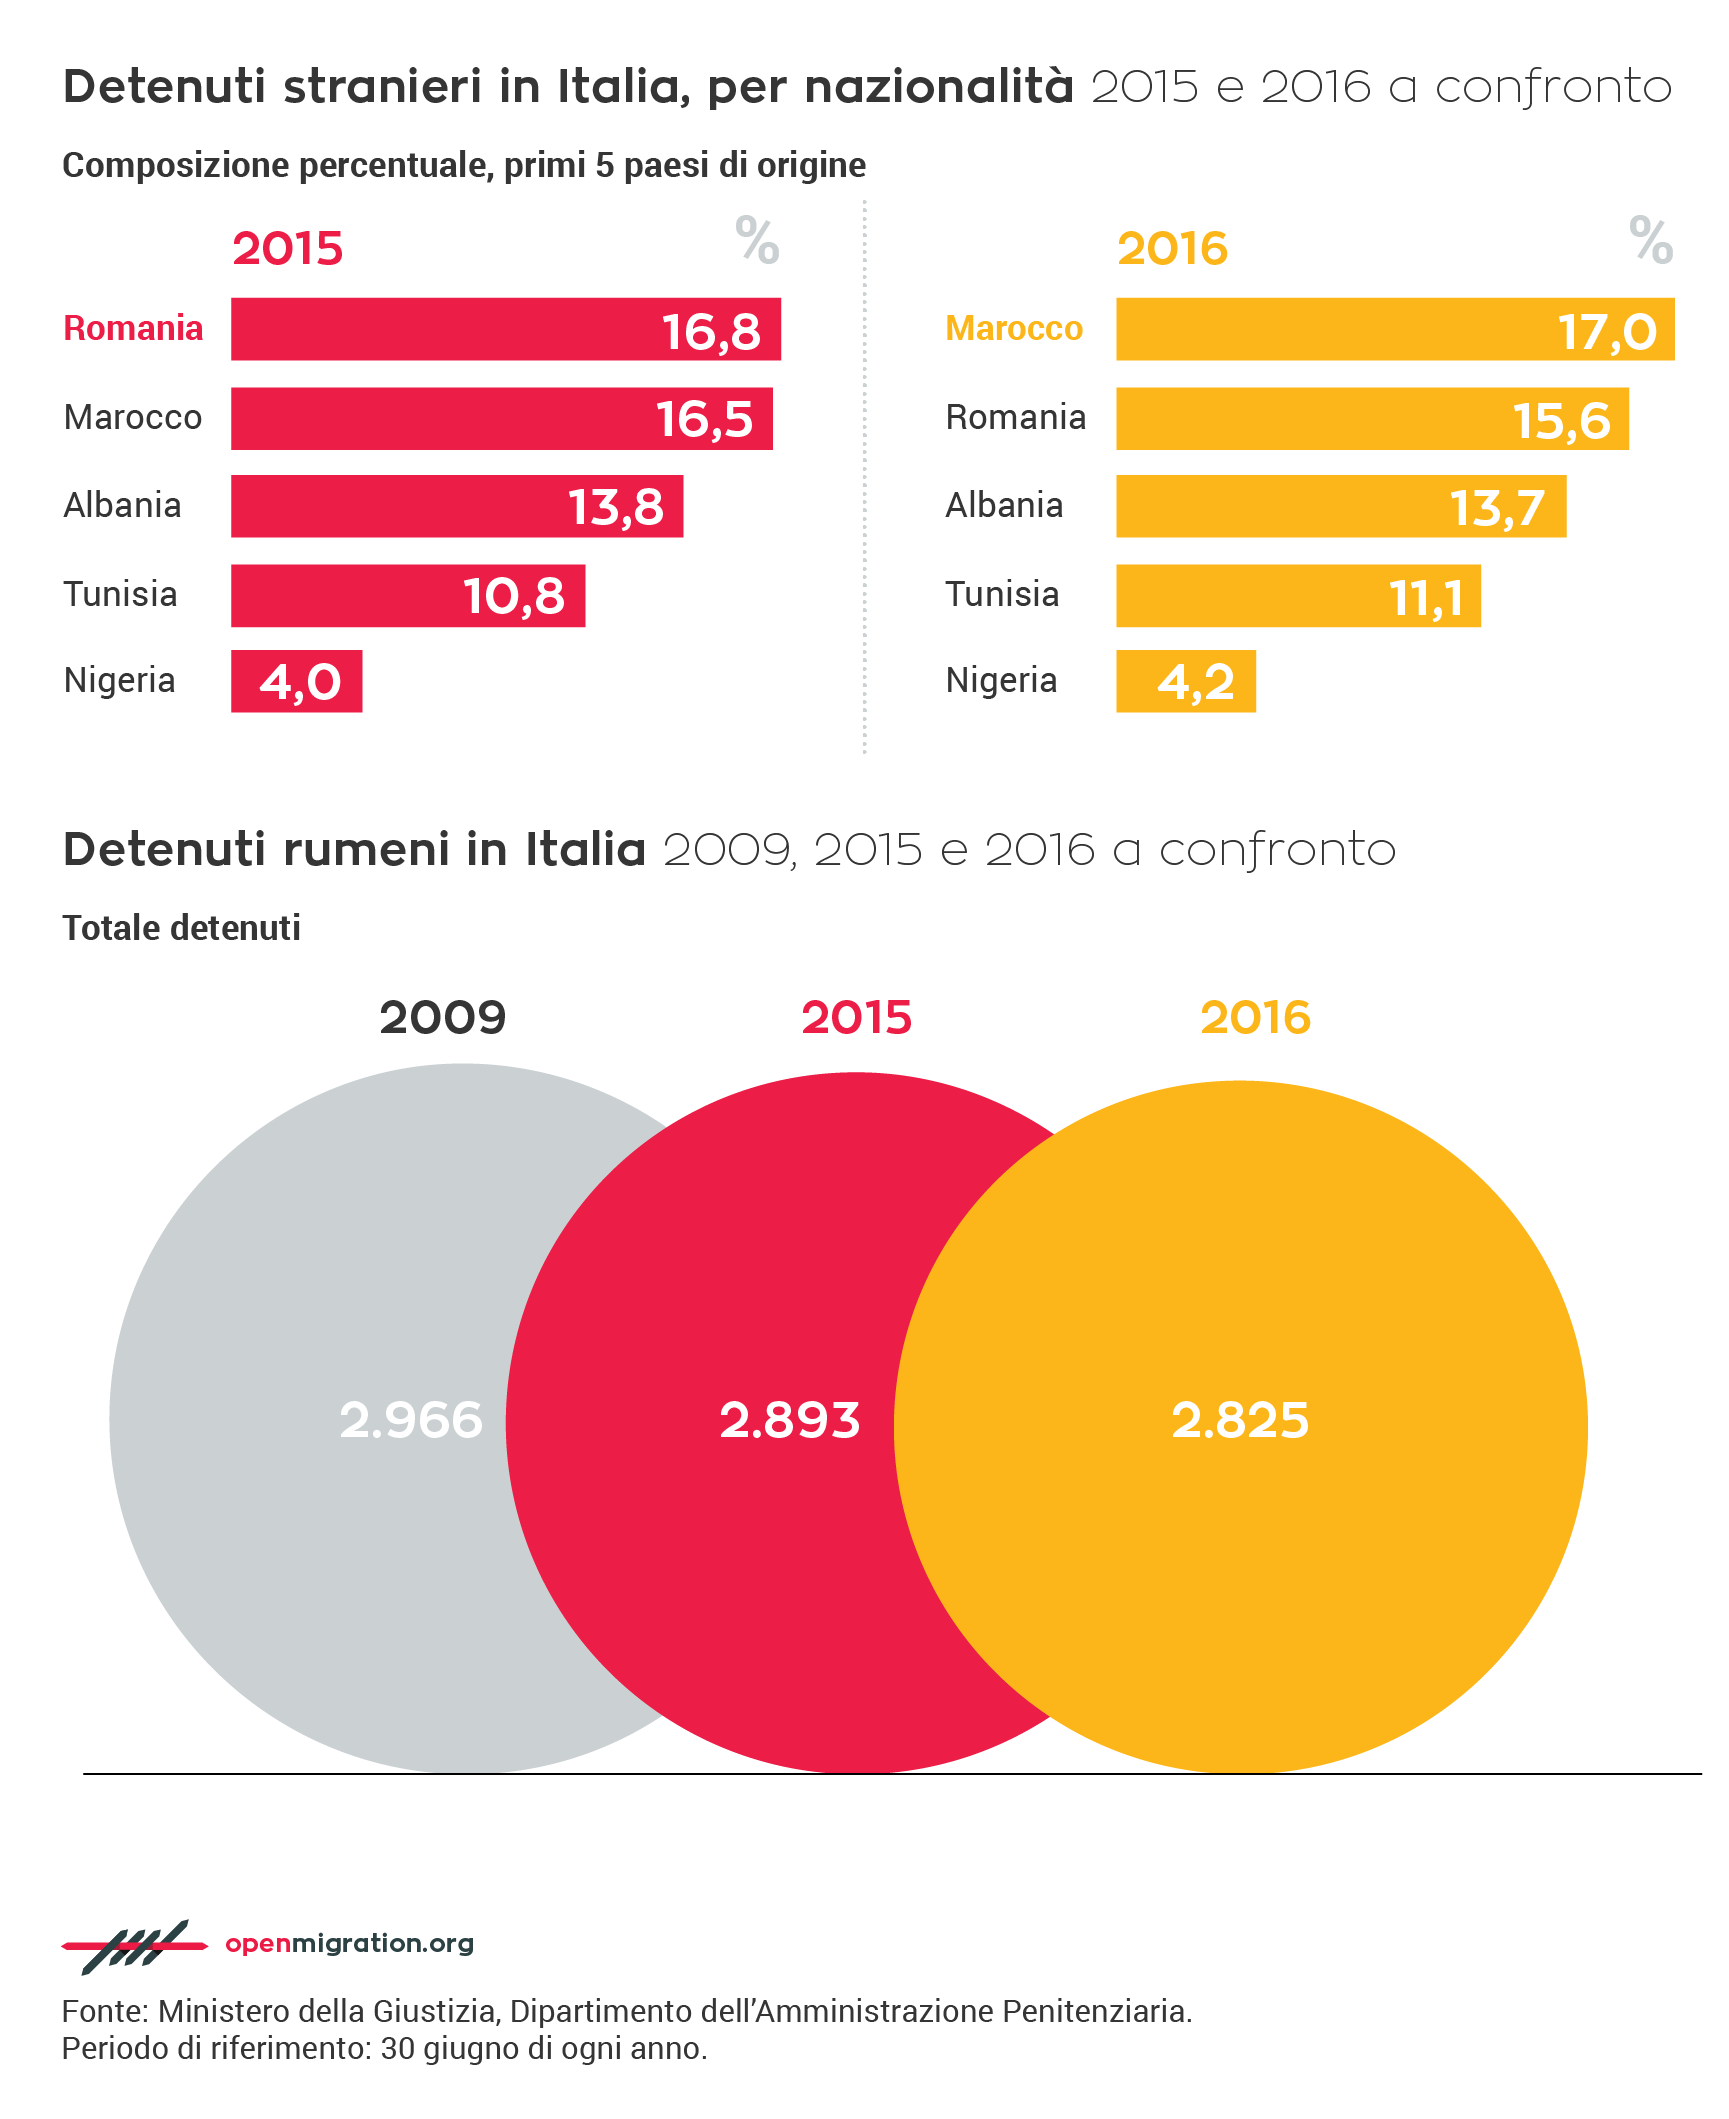 Detenuti stranieri in Italia per nazionalità, 2015-2016 a confronto